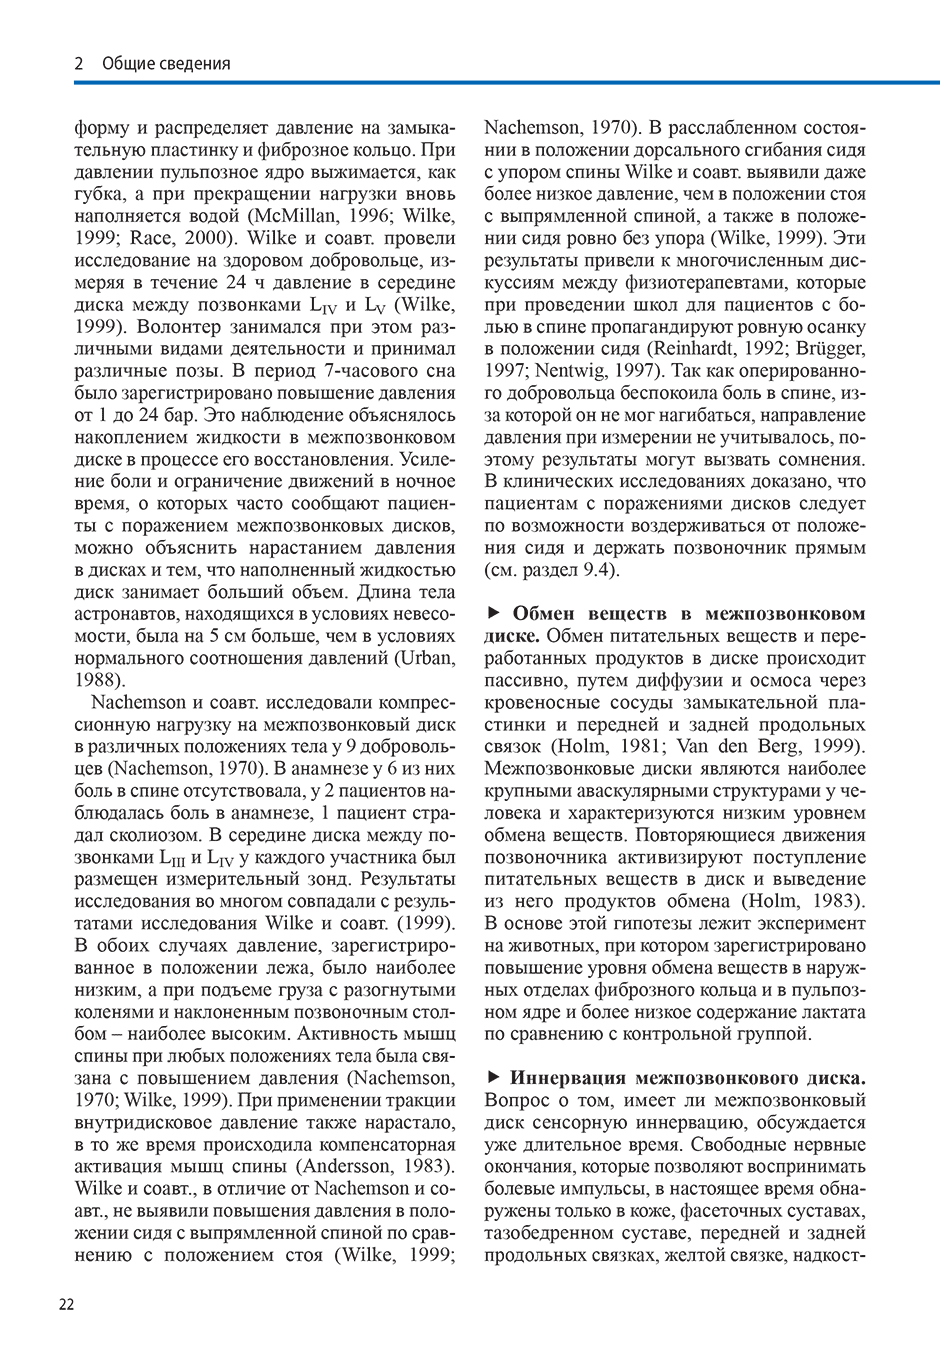 Пример страницы из книги "Диагностика и лечение поражений межпозвонковых дисков" - Брётц Дорис